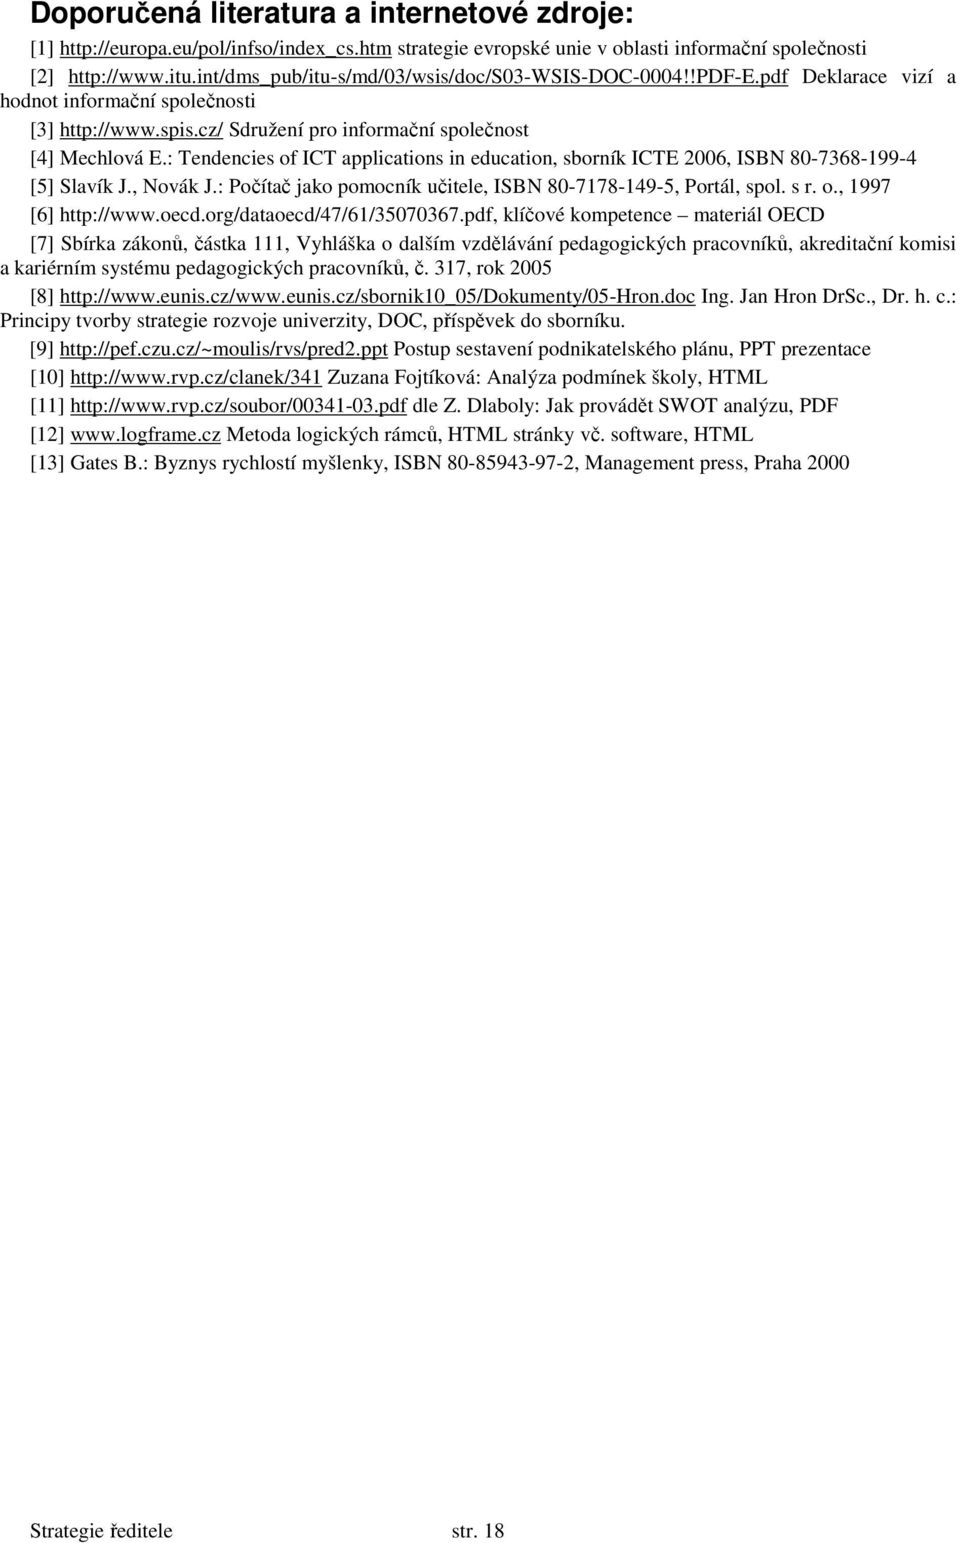 : Tendencies of ICT applications in education, sborník ICTE 2006, ISBN 80-7368-199-4 [5] Slavík J., Novák J.: Počítač jako pomocník učitele, ISBN 80-7178-149-5, Portál, spol. s r. o., 1997 [6] http://www.